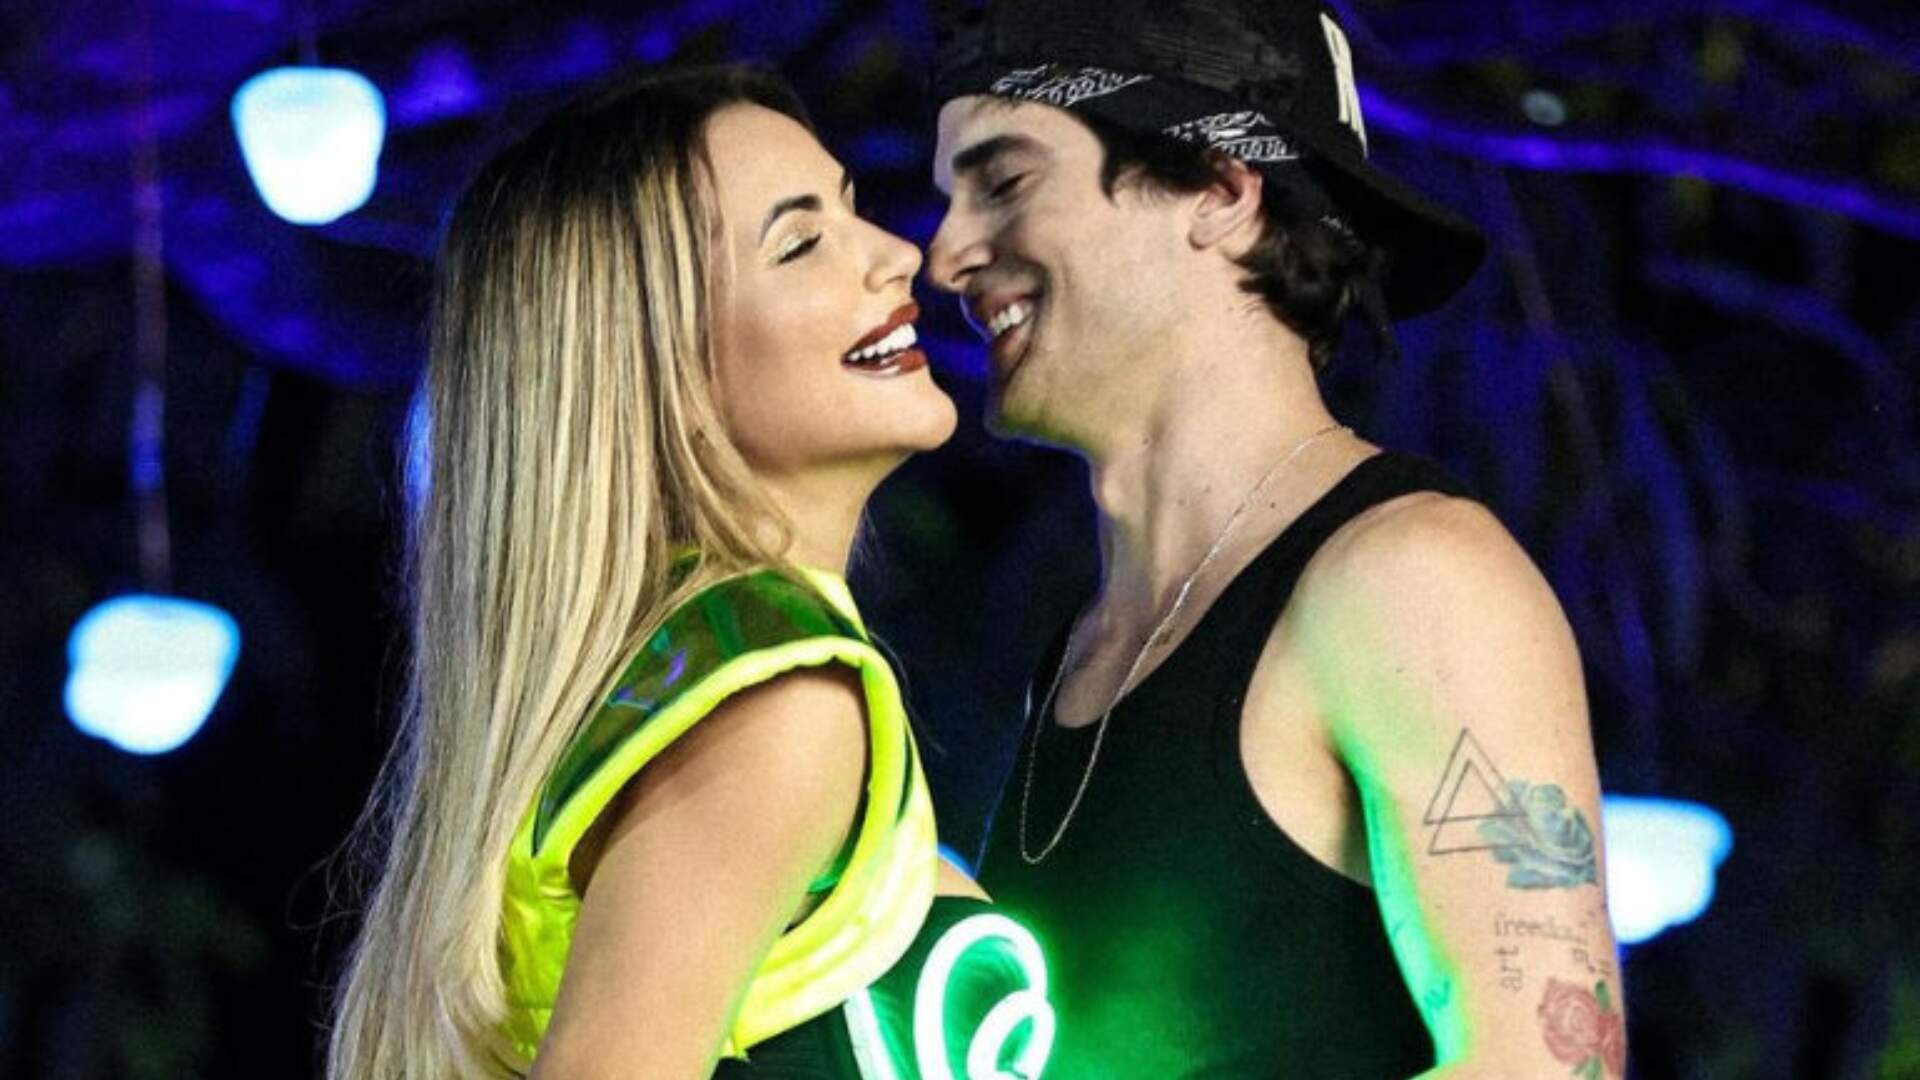 Fiuk lamenta briga pública com Deolane e compartilha vídeo romântico: “Vai ficar na memória” - Metropolitana FM